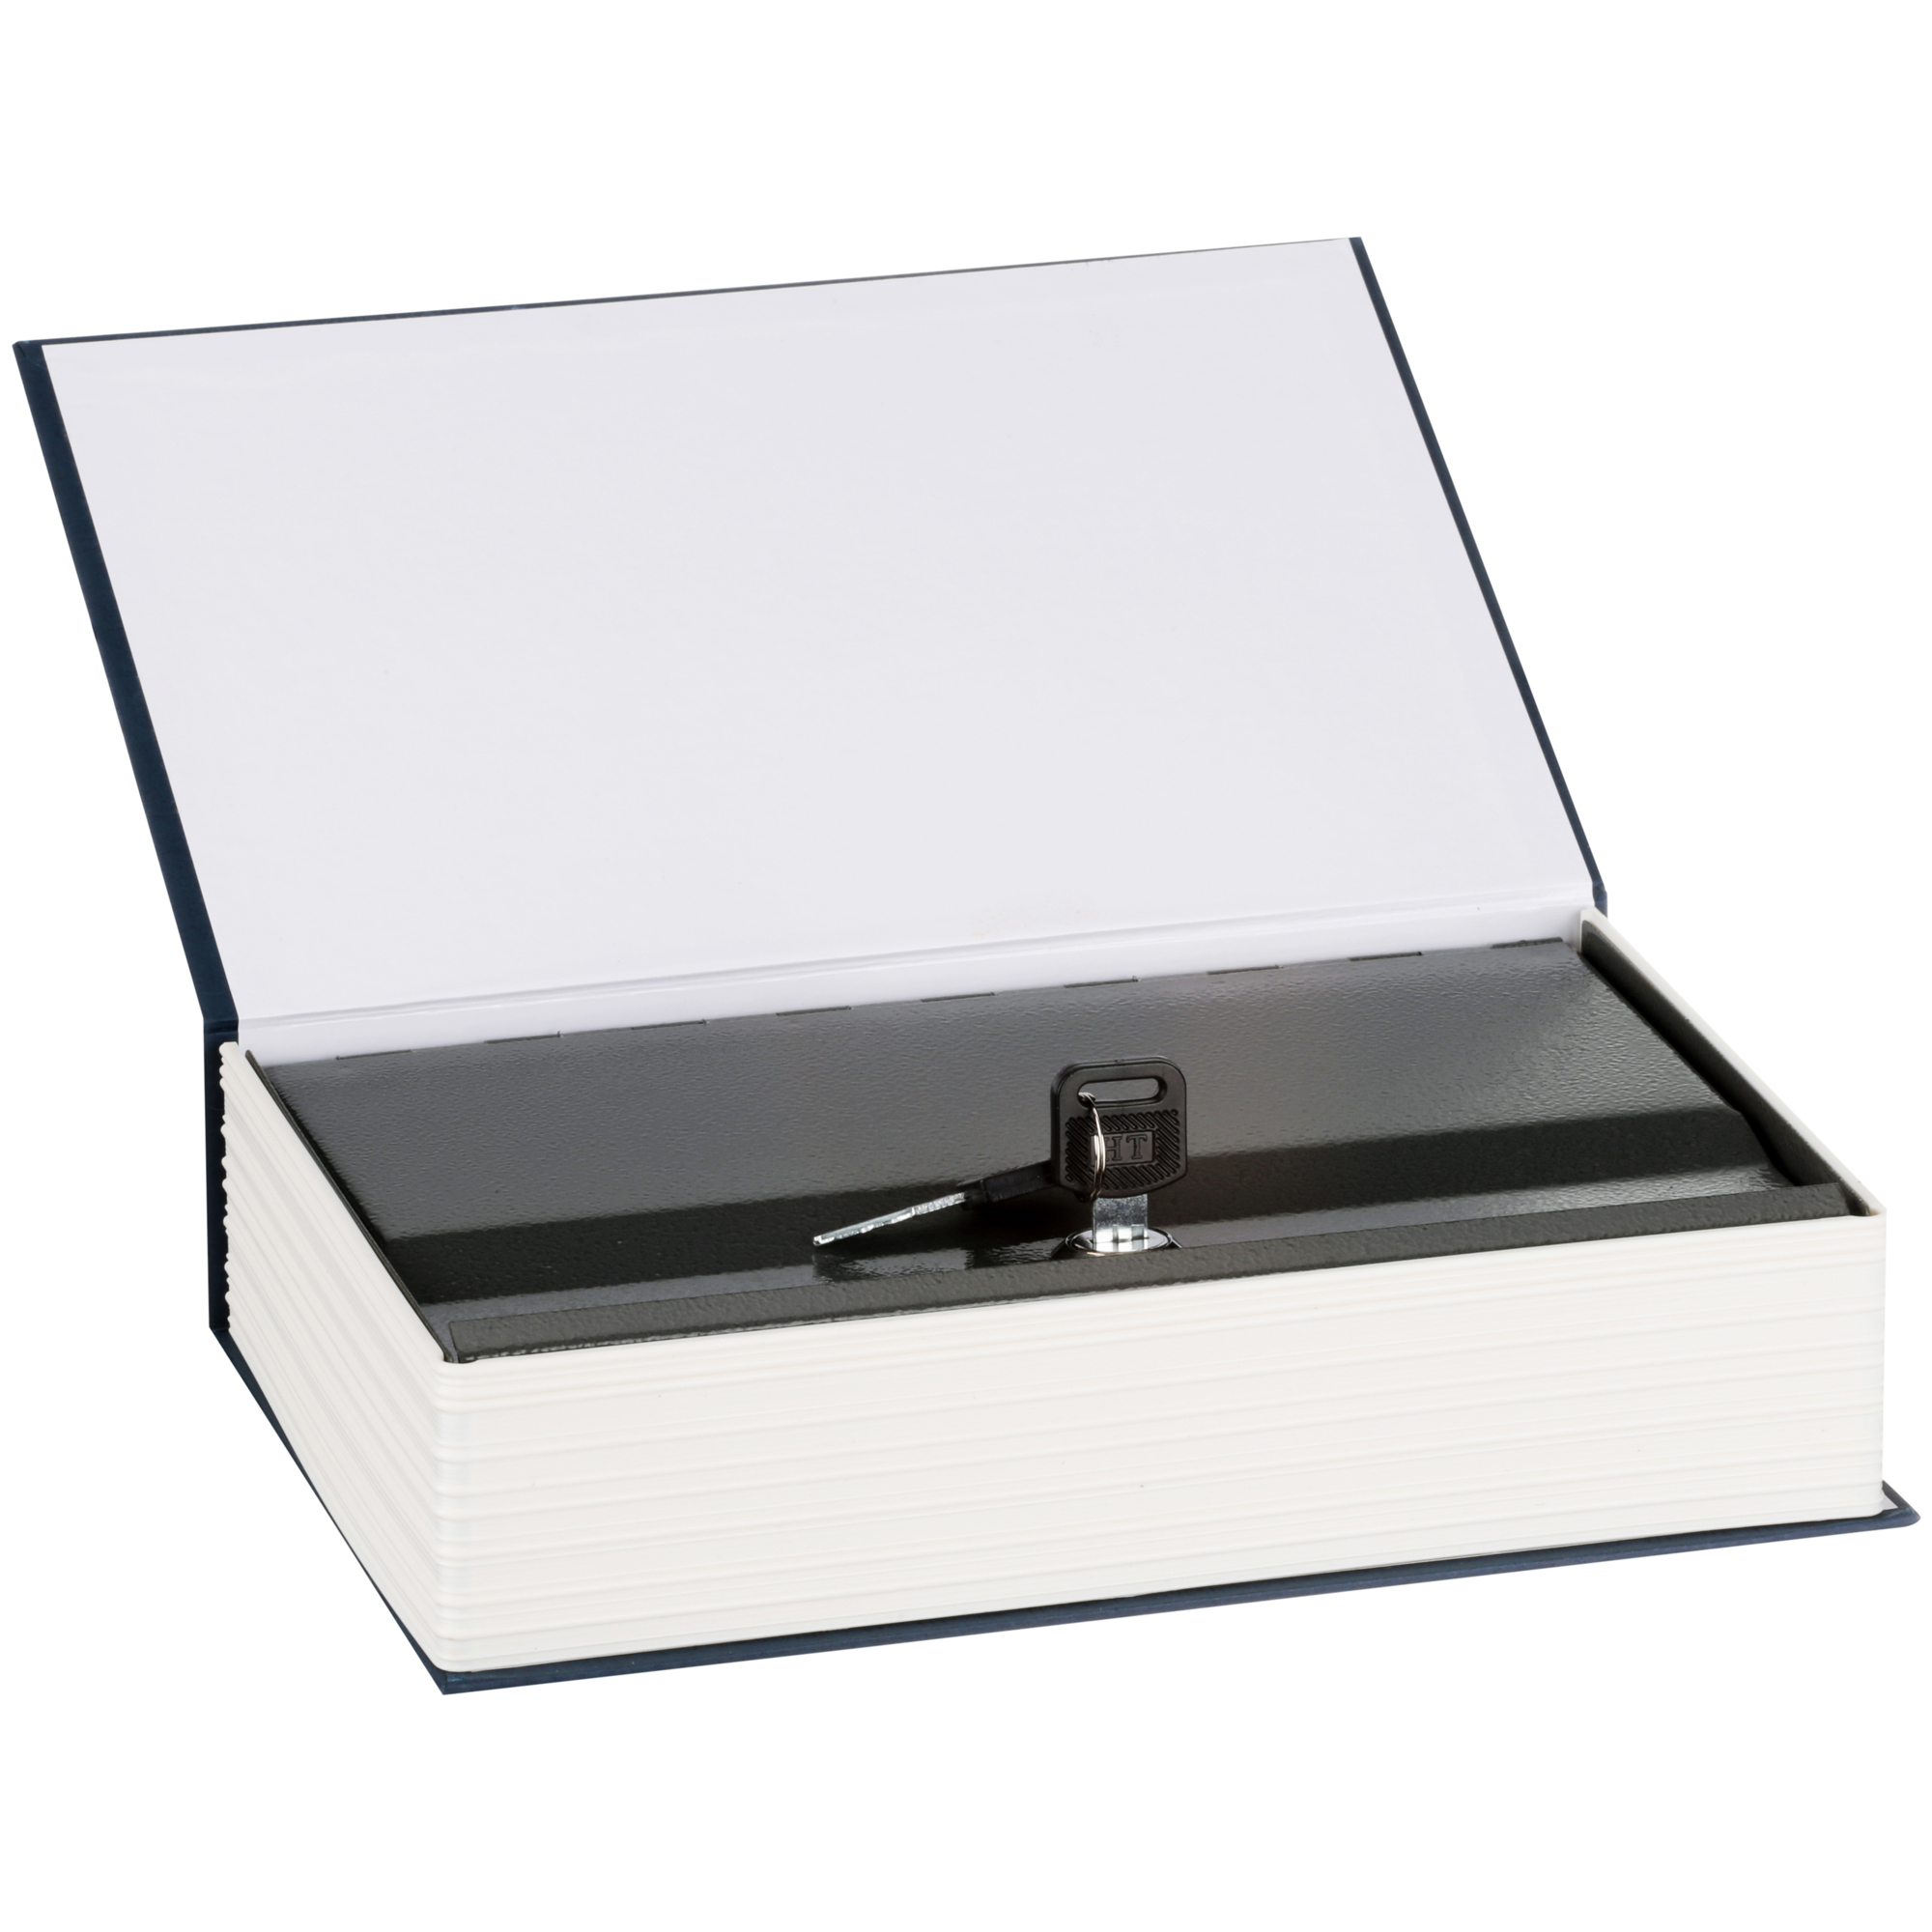 Stalwart Lock Box Diversion Book Safe with Key Lock, W200017 - image 3 of 4